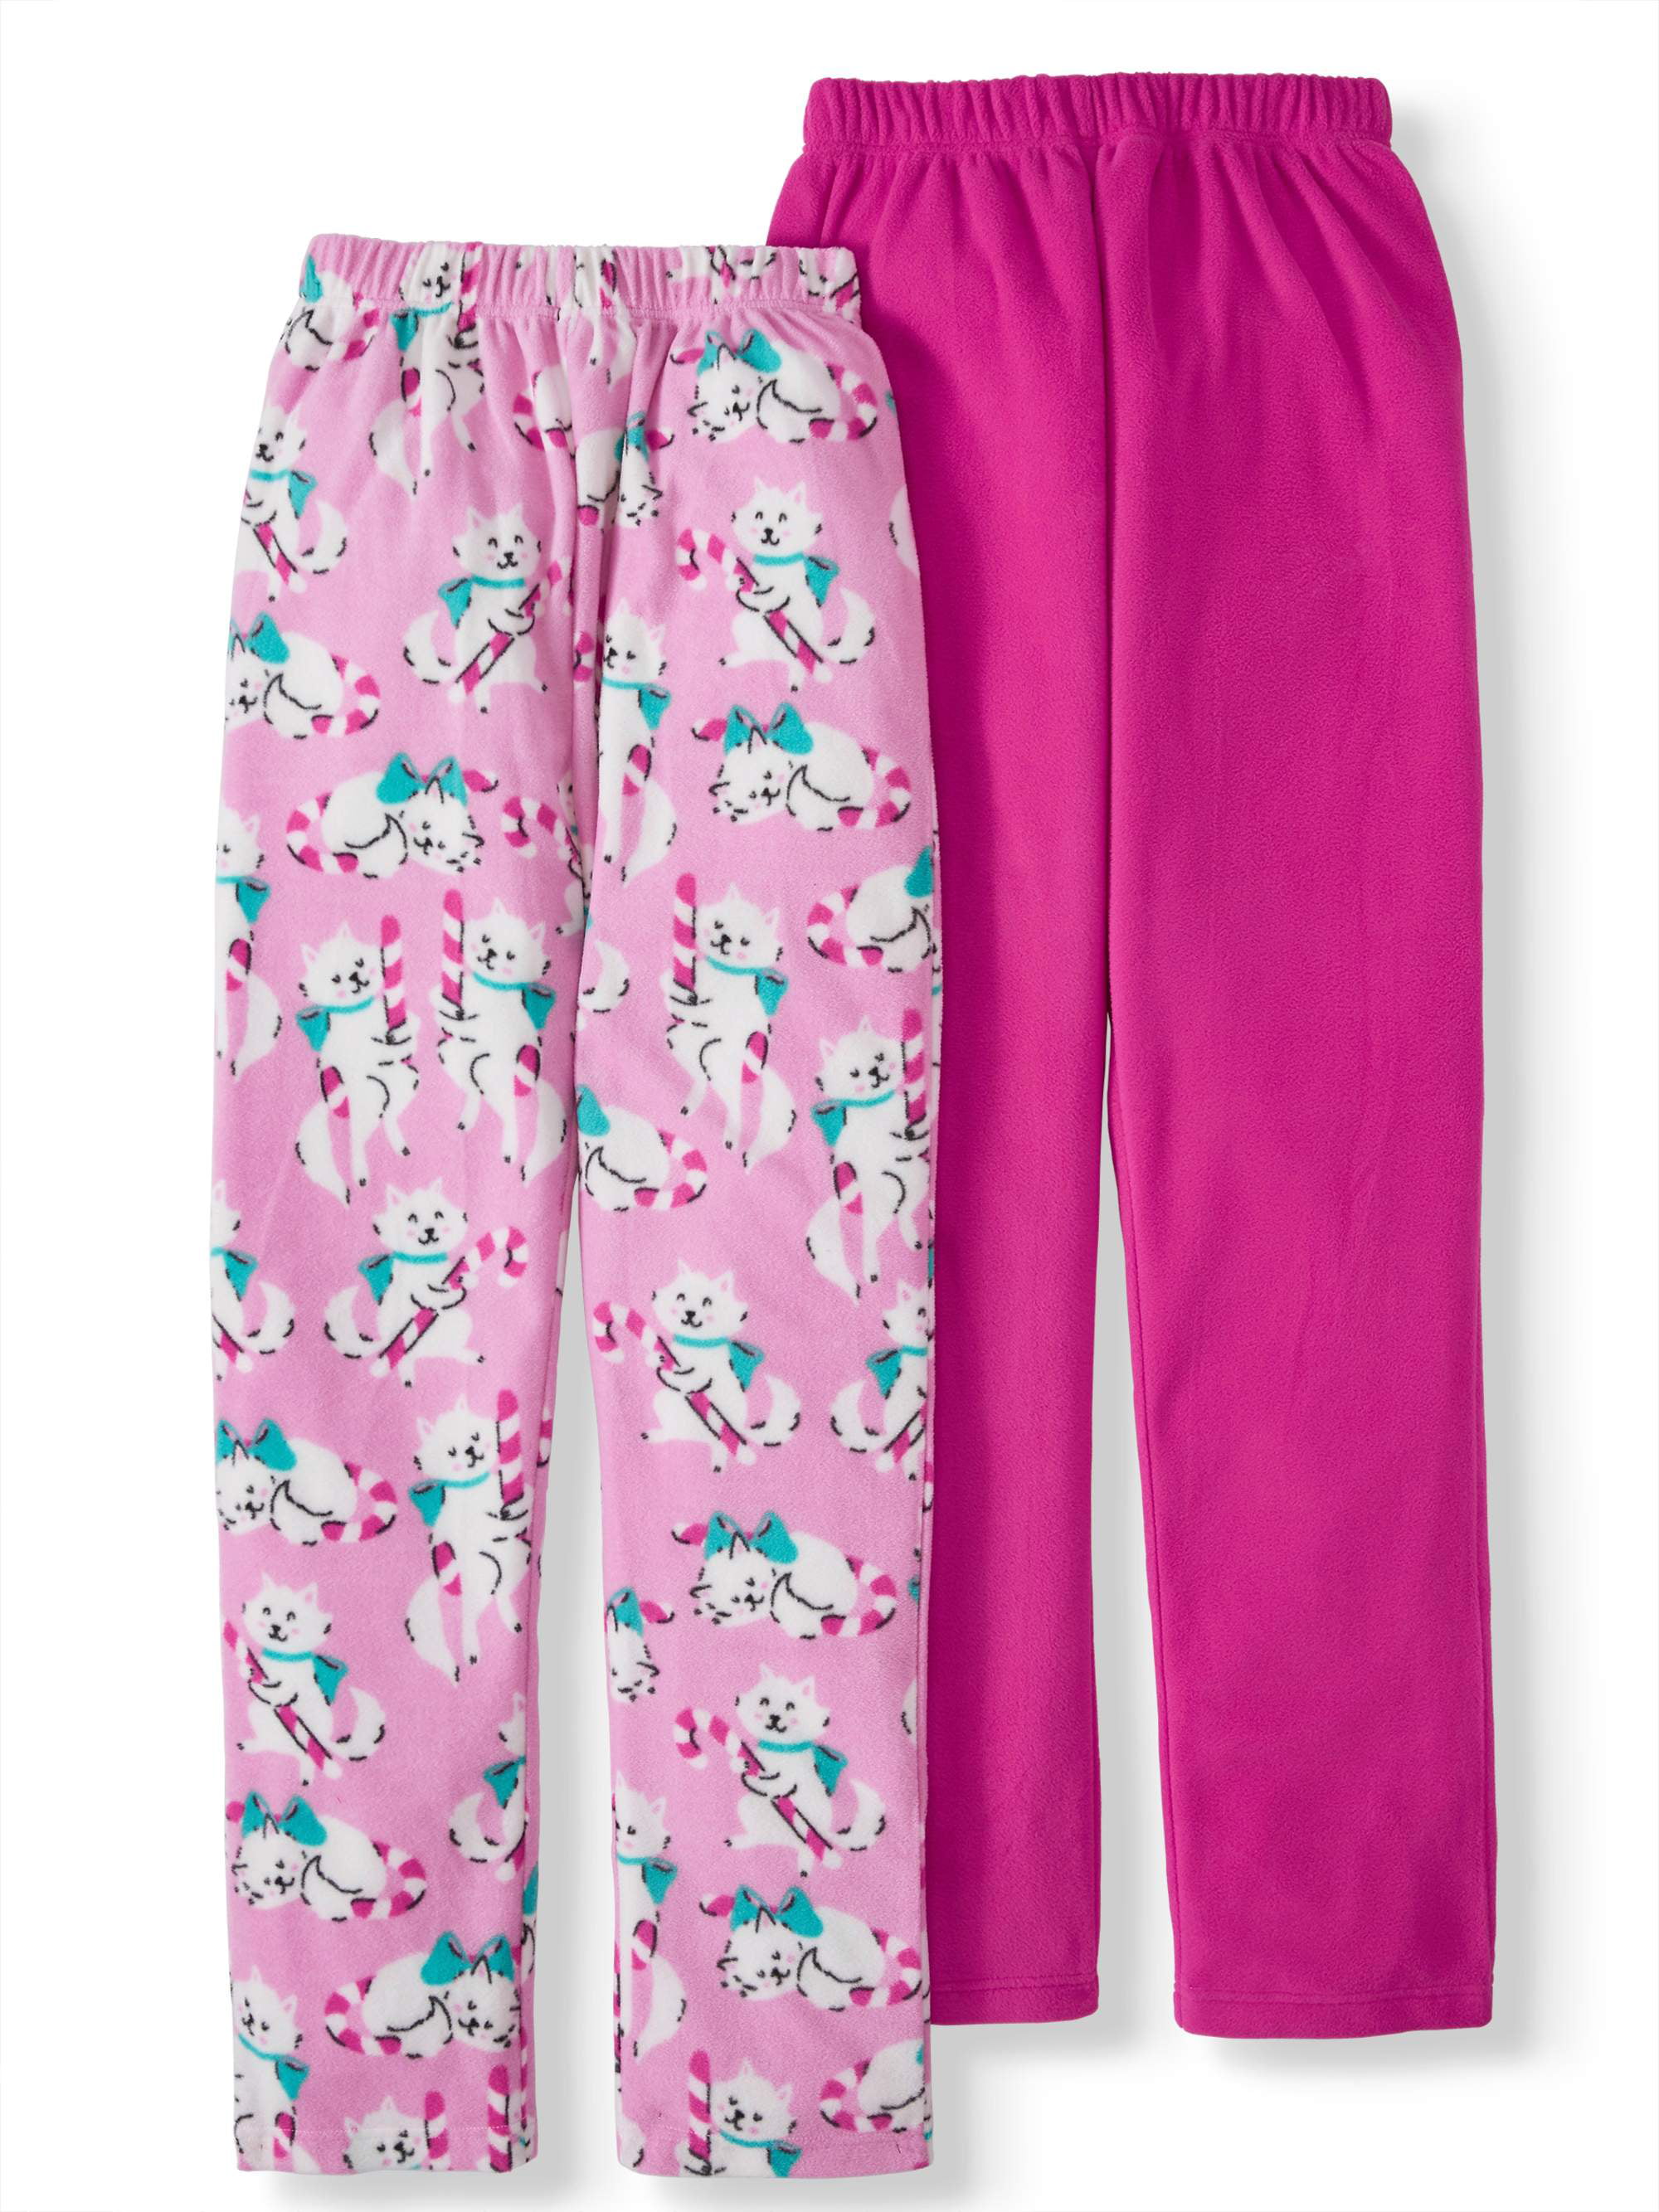 Plus Size Nite Nite by Munki Munki Mean Girls Pajama Top & Pajama Pants Set